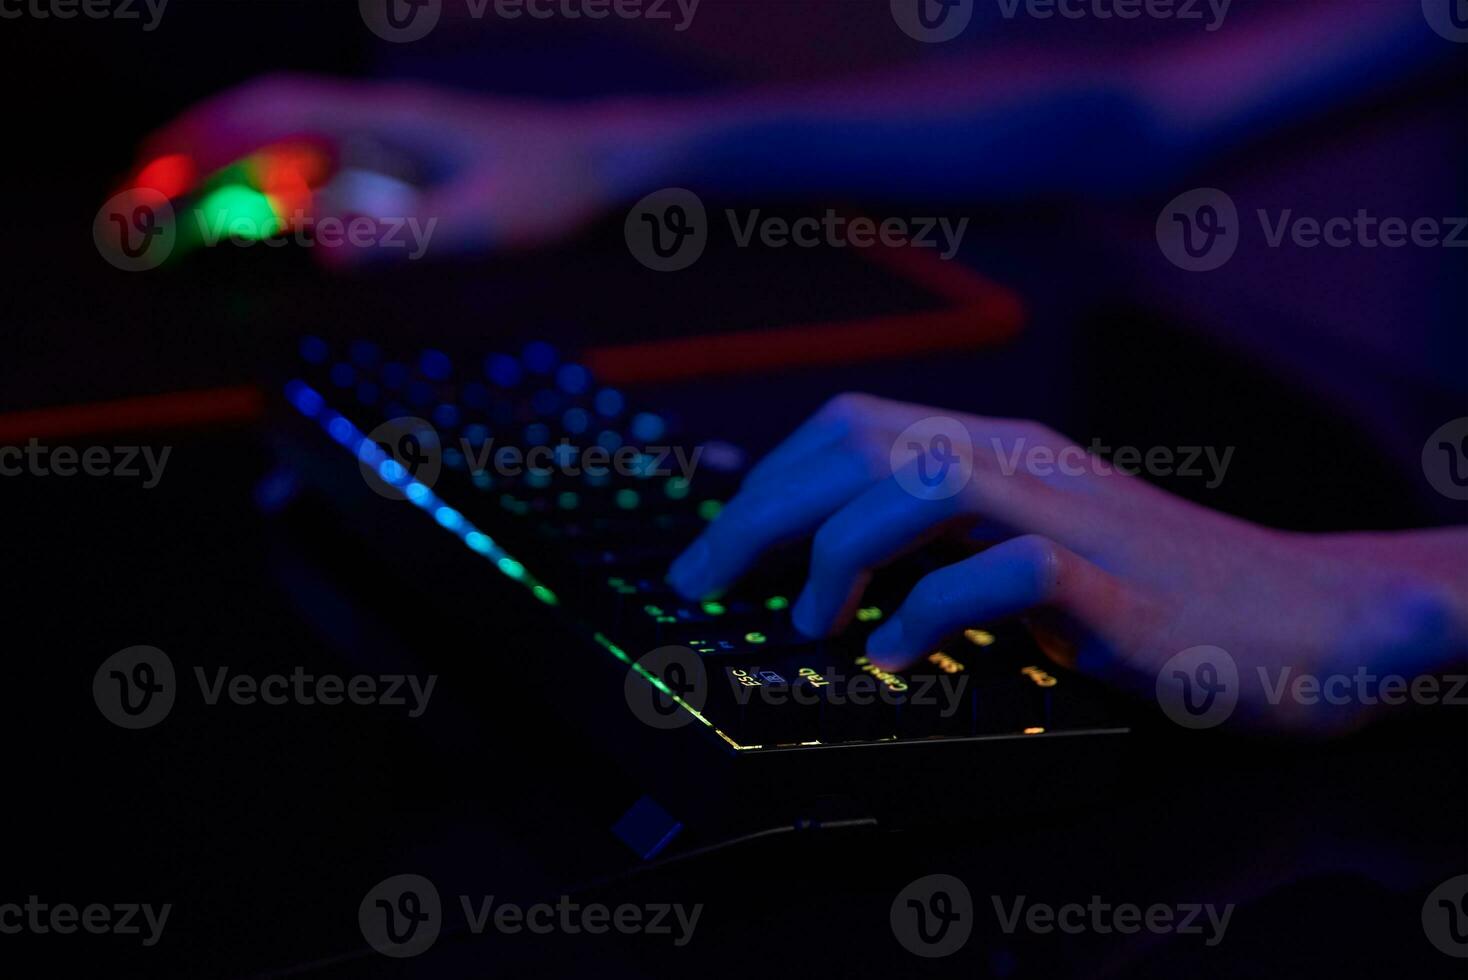 gamer spielen computerspiel, verwenden rgb neonfarbene tastatur foto